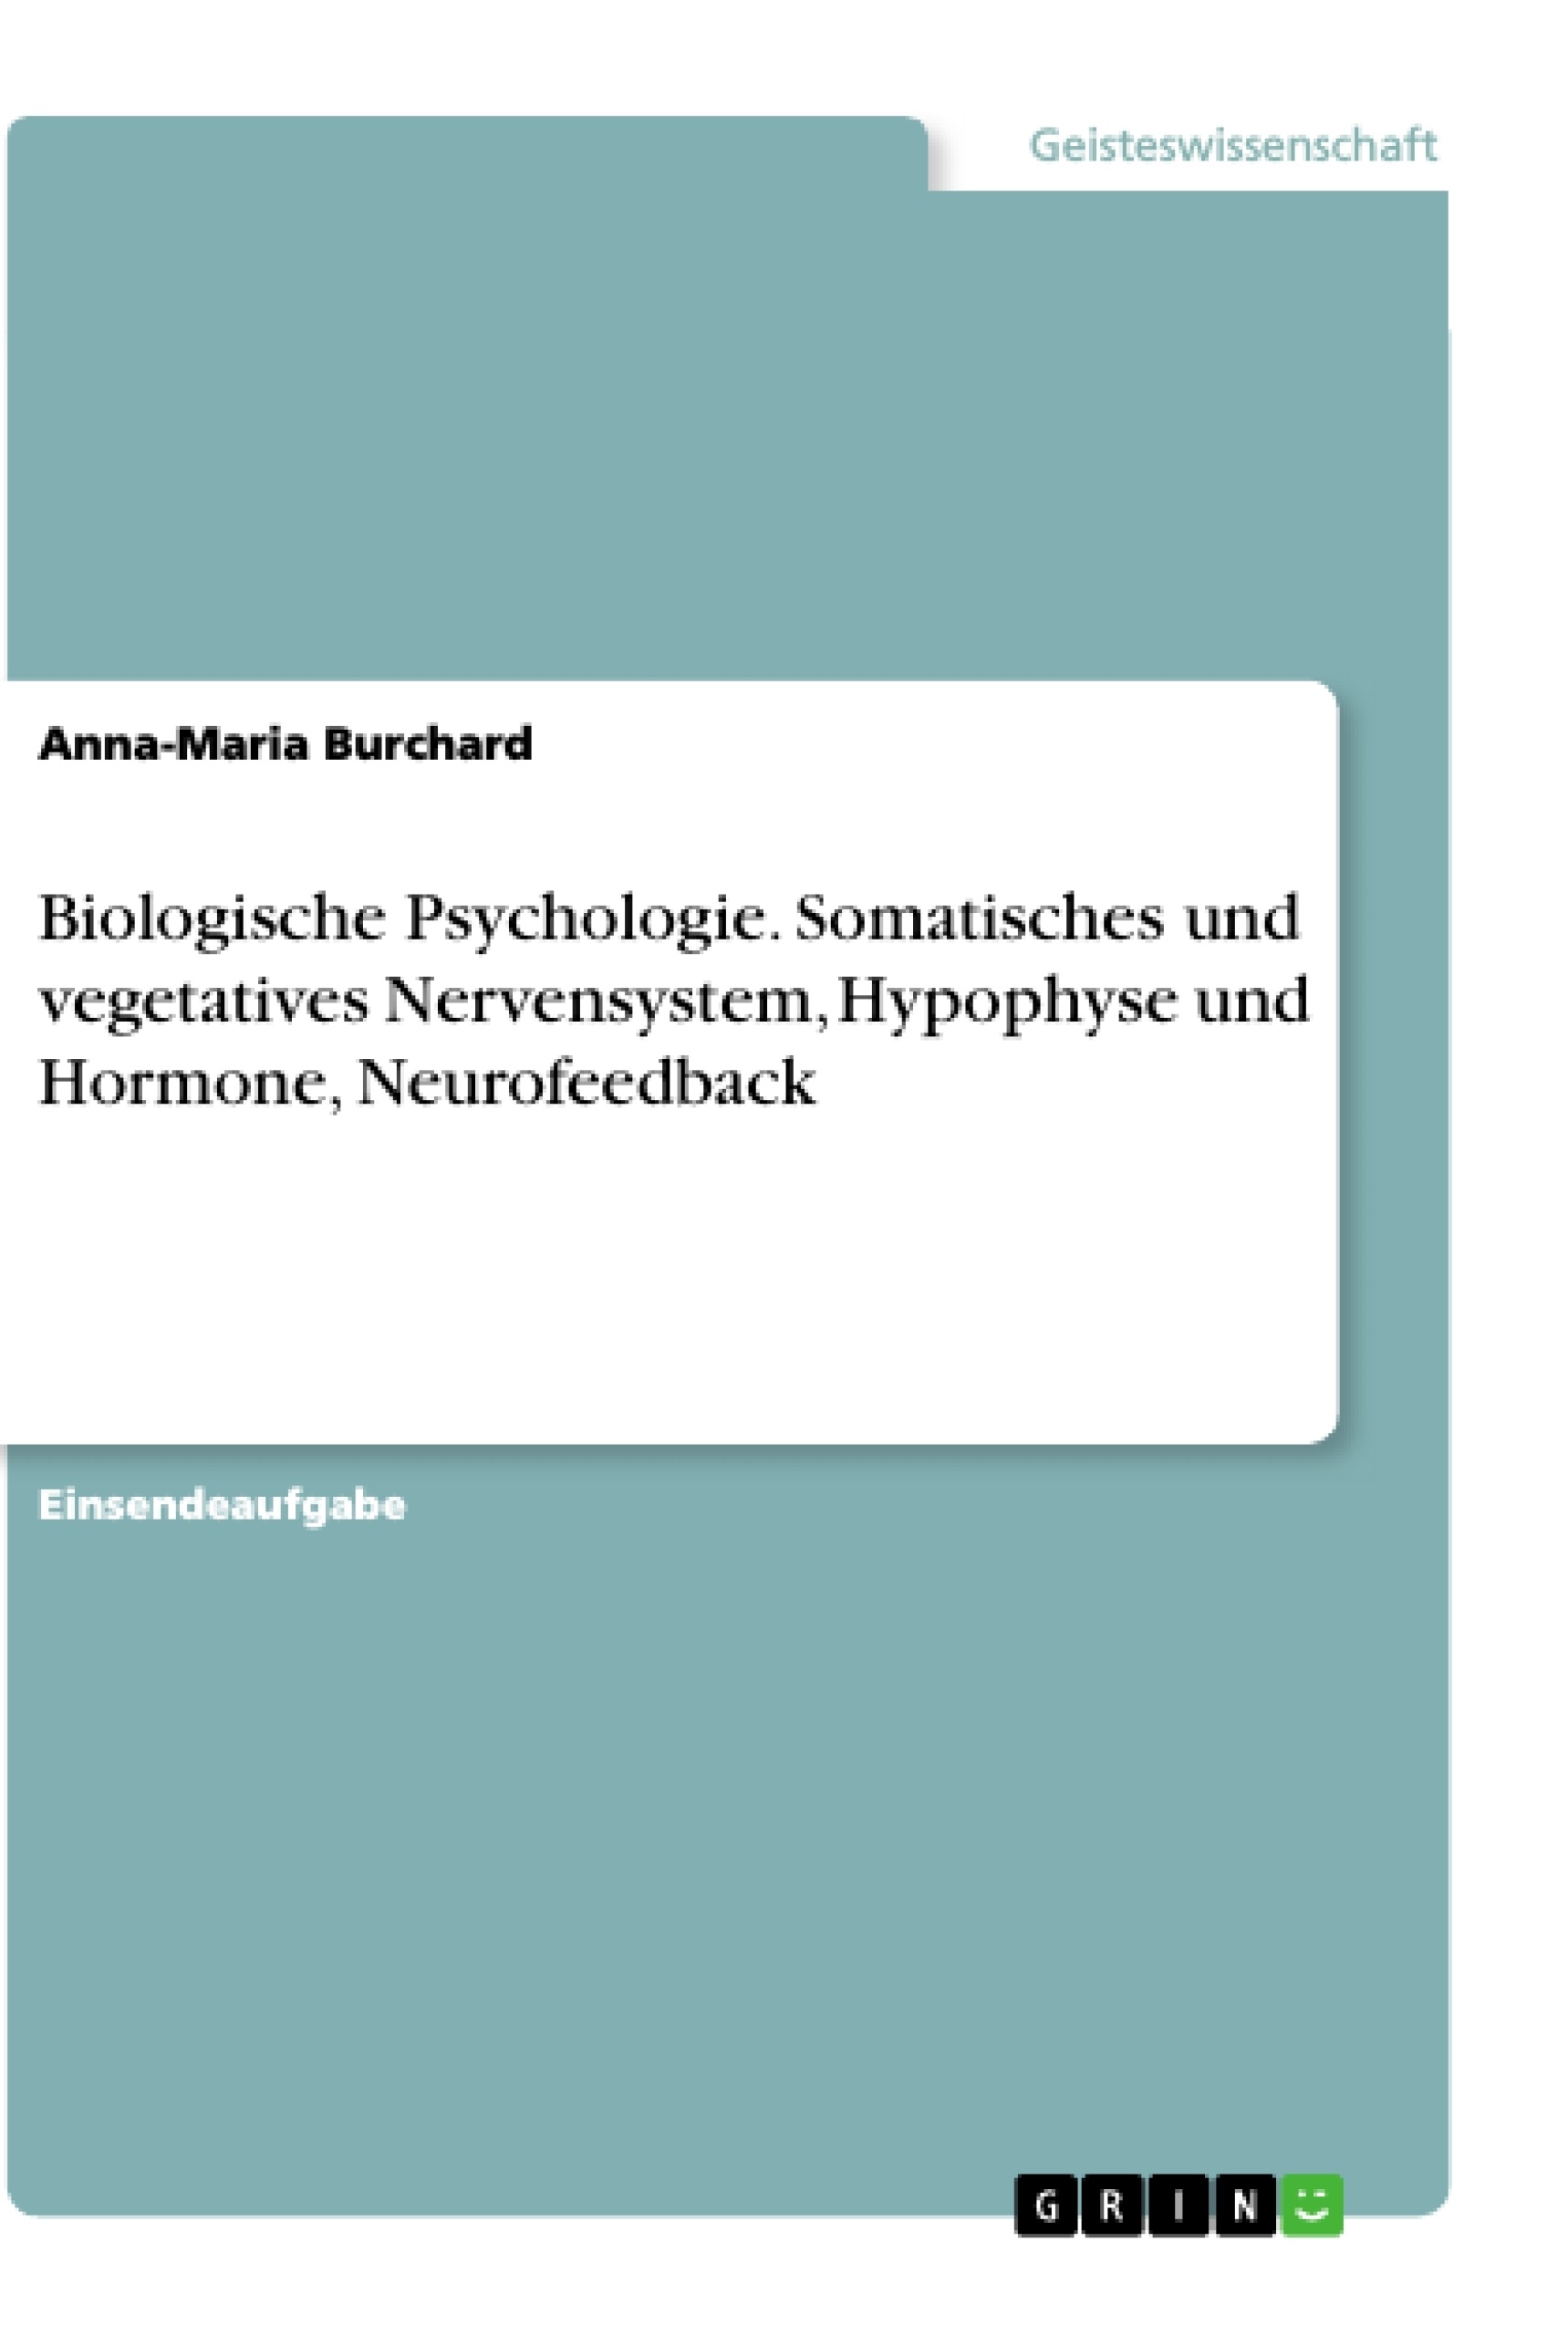 Title: Biologische Psychologie. Somatisches und vegetatives Nervensystem, Hypophyse und Hormone, Neurofeedback